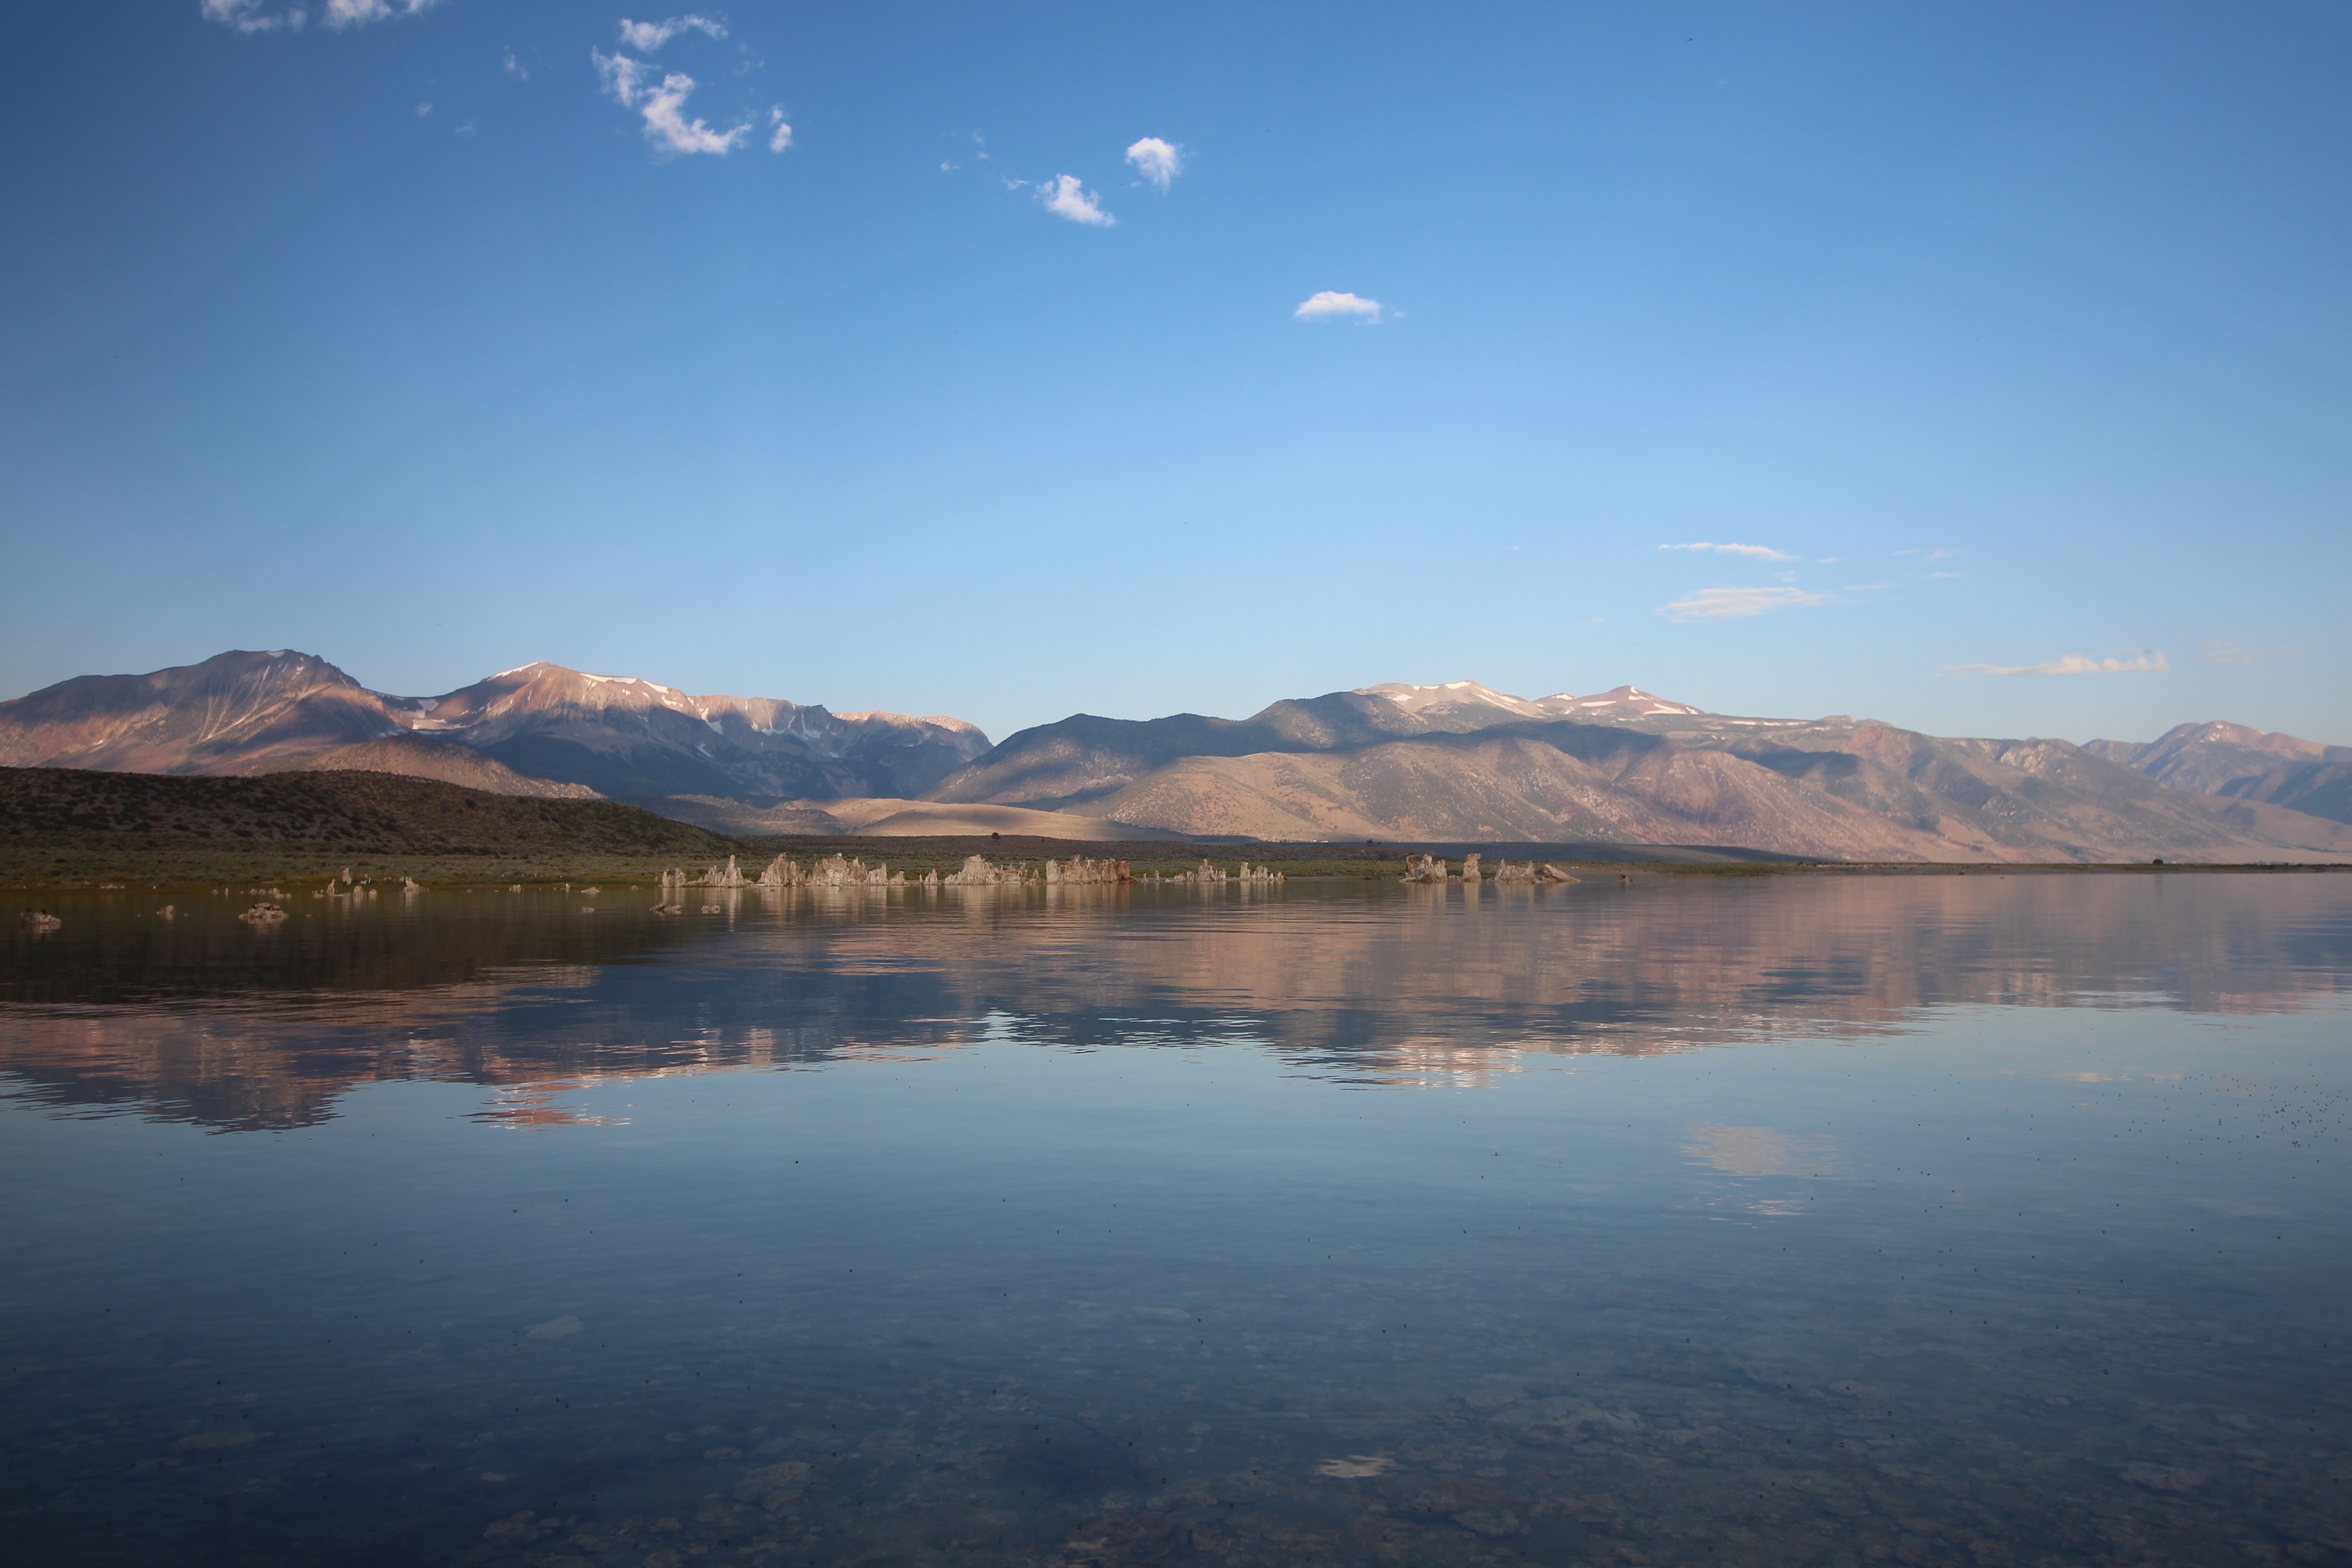 12Mono Lake Sierra Nevada Mountains In The Background